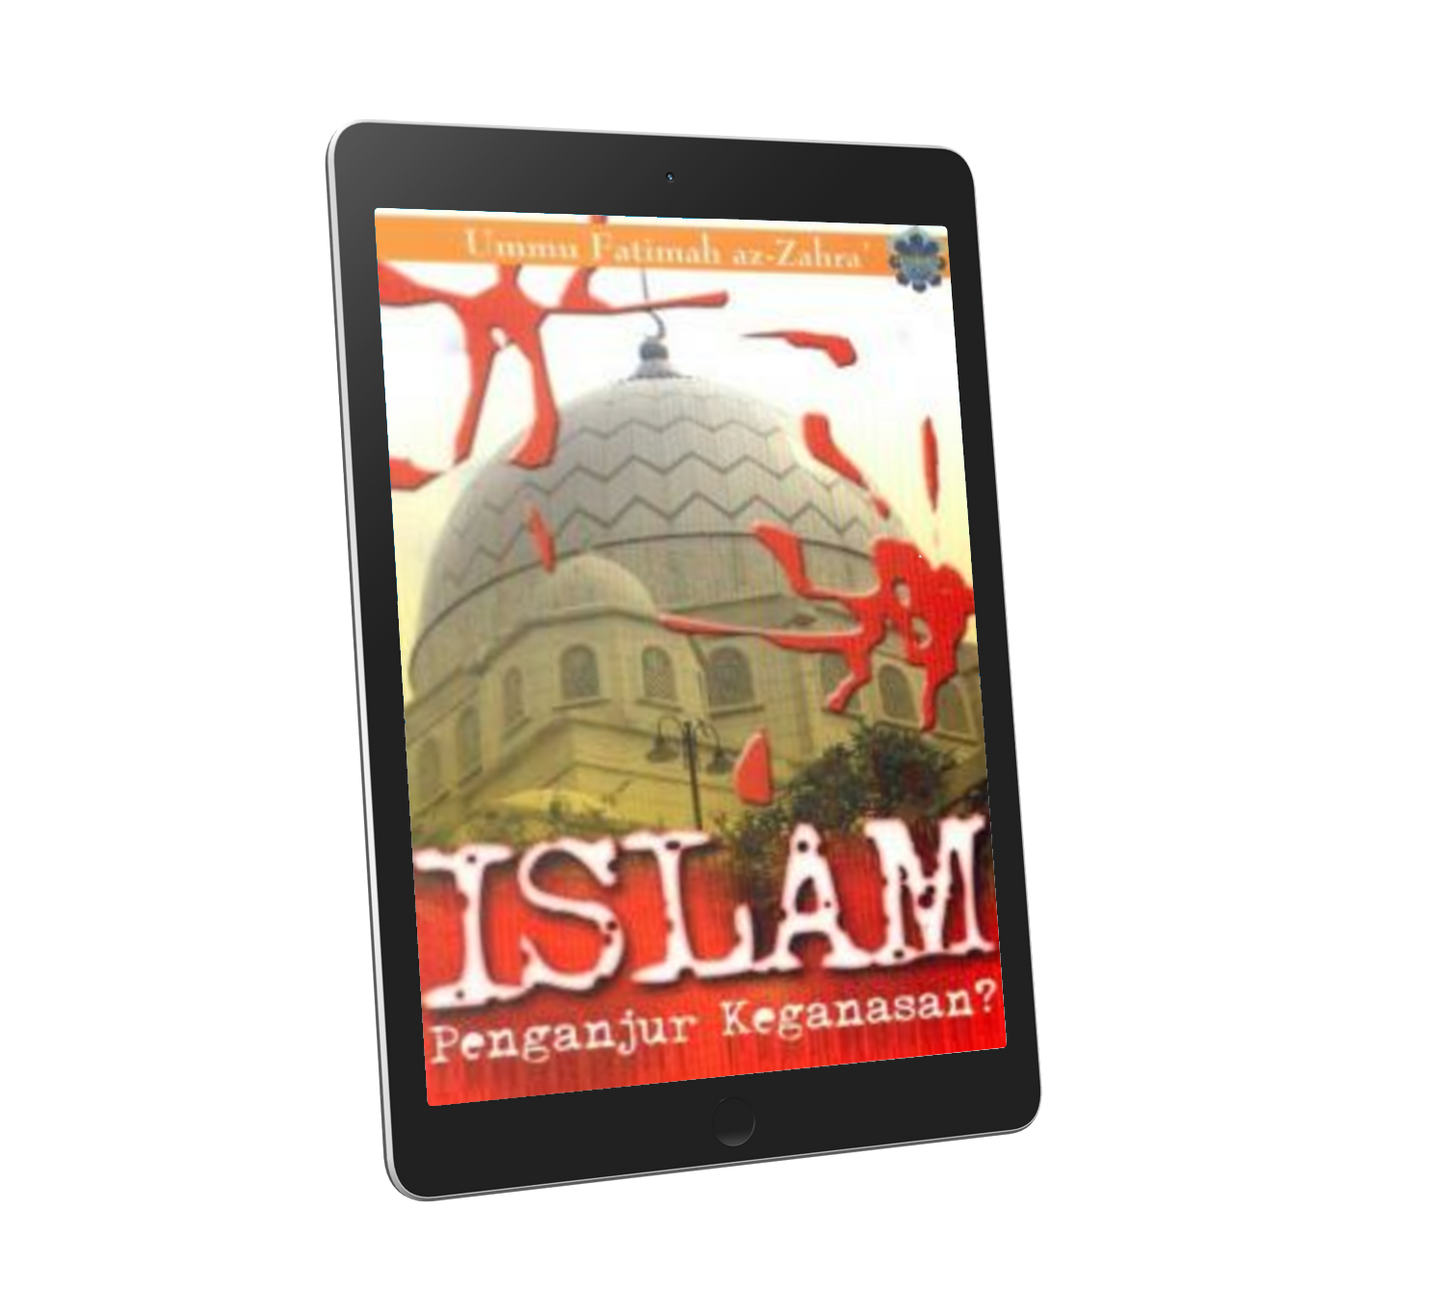 Islam Penganjur Keganasan?